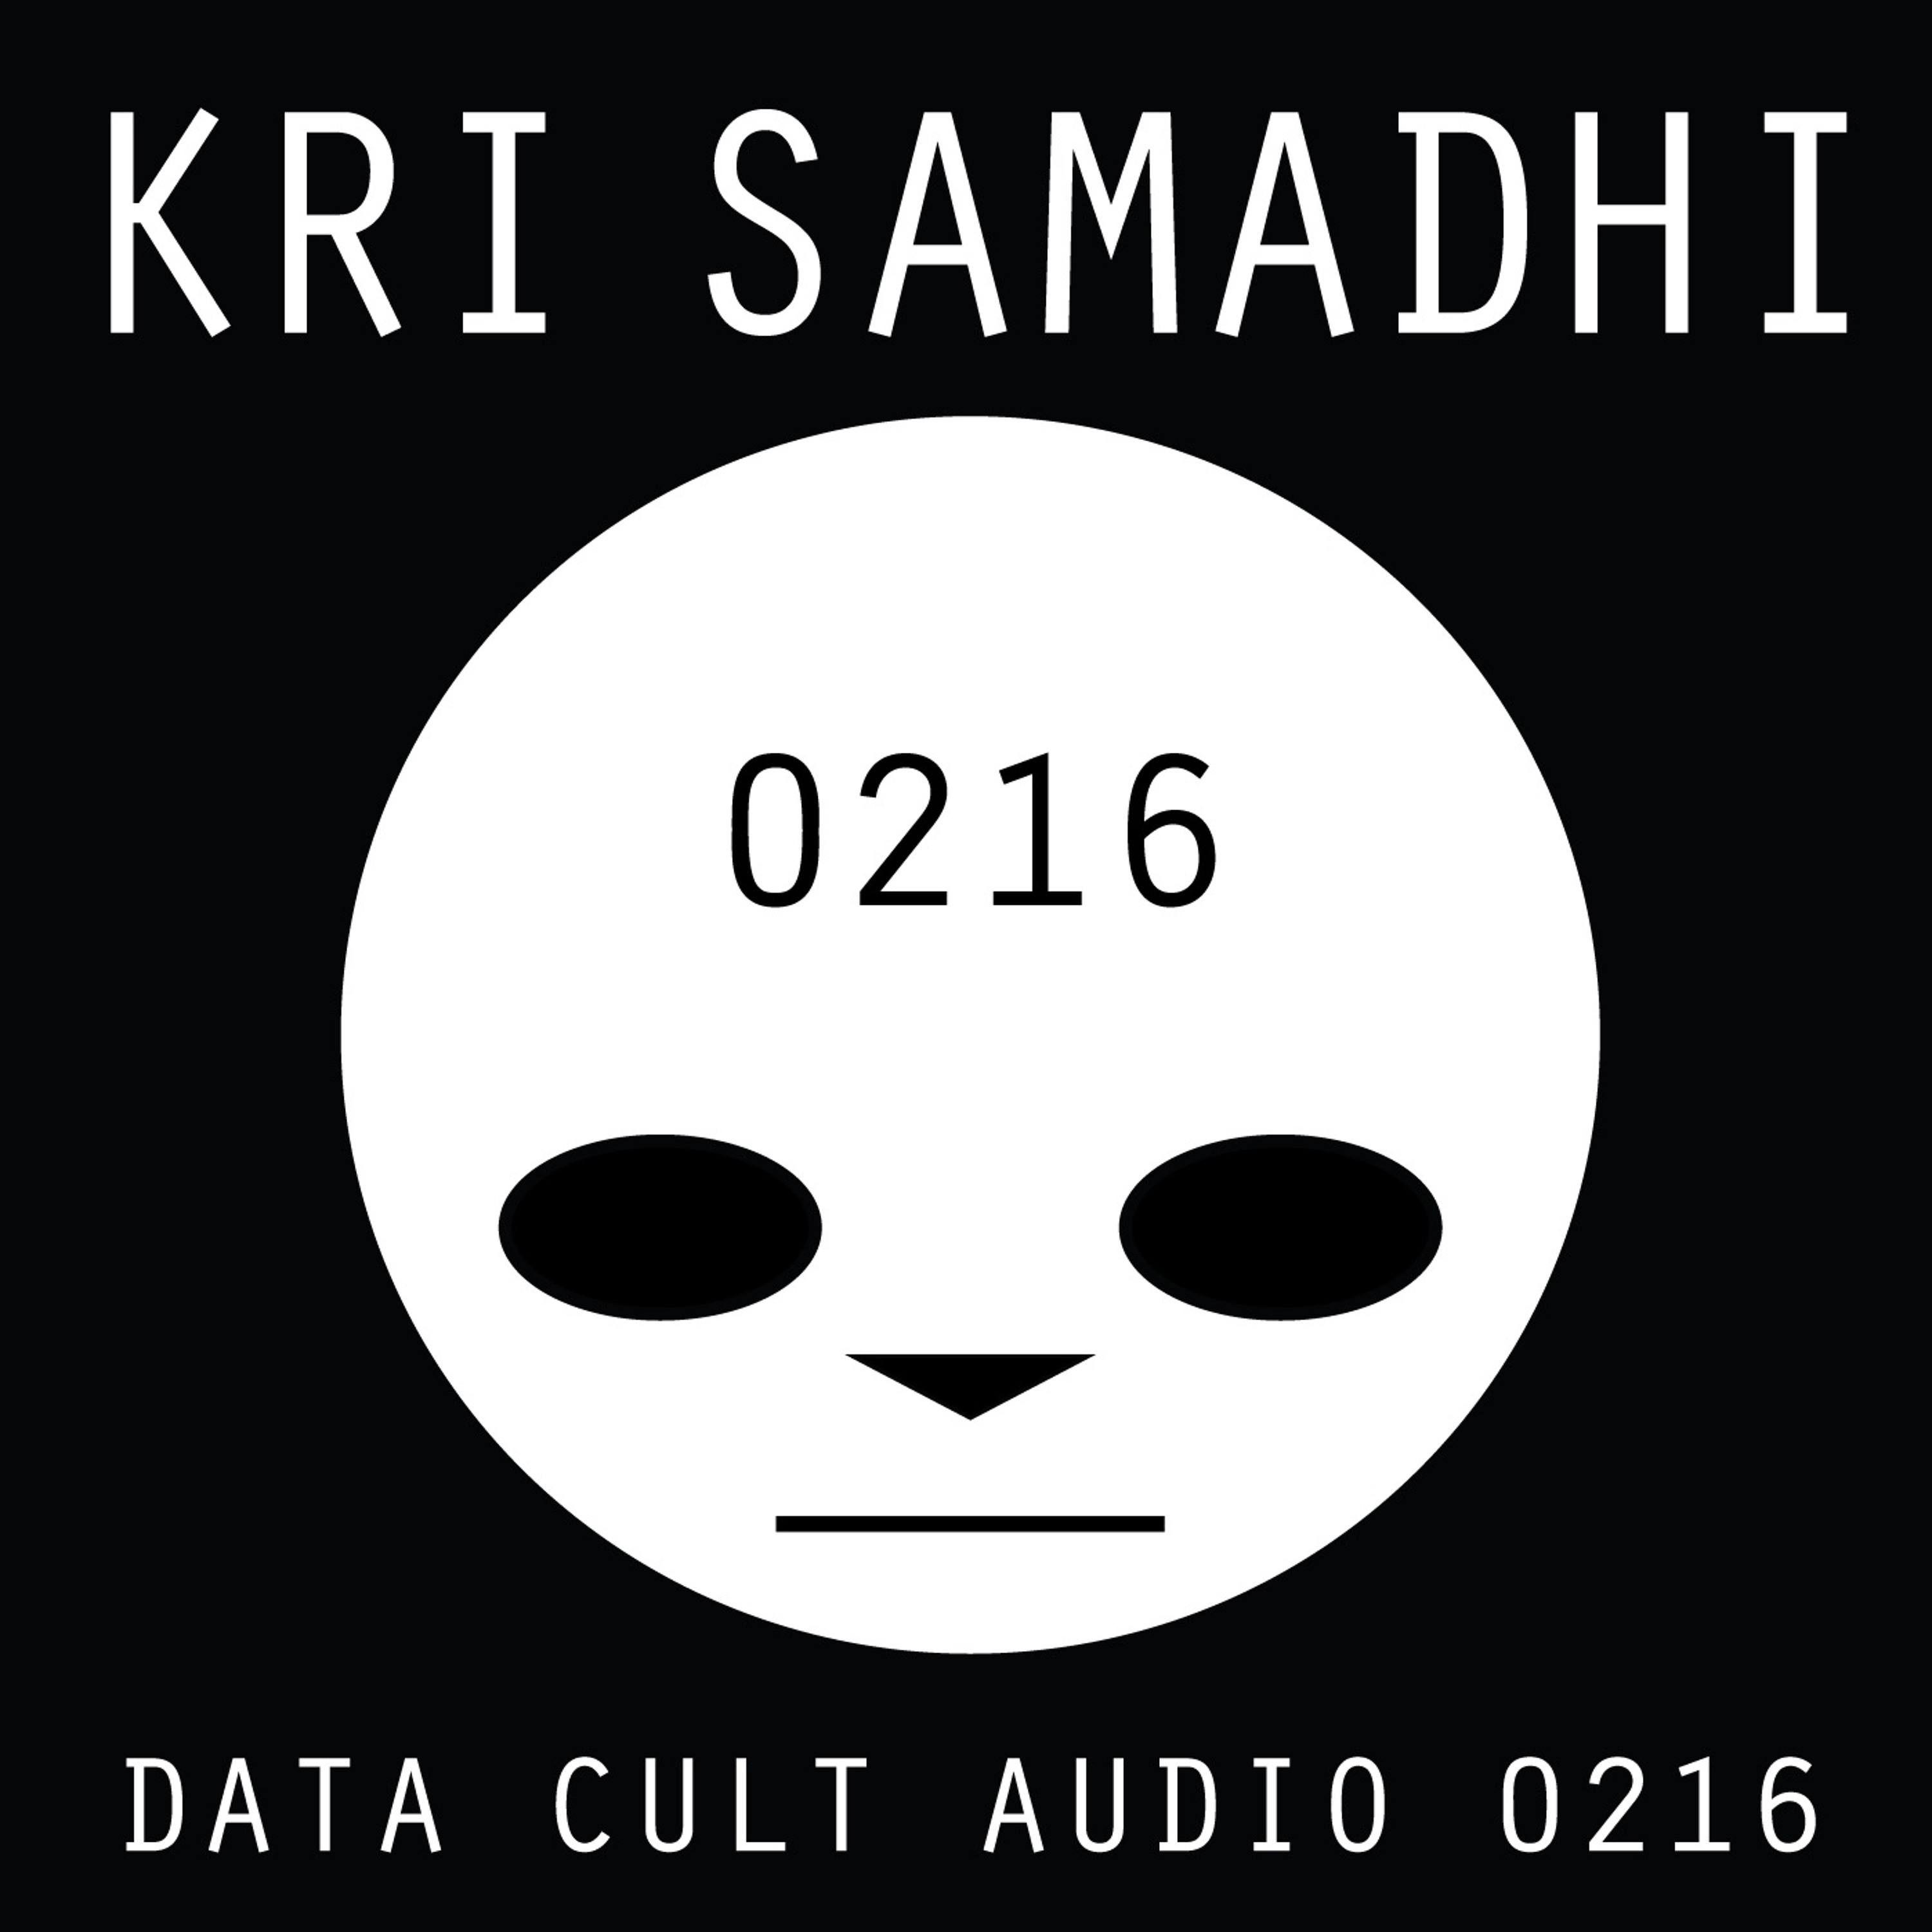 Data Cult Audio 0216 - Kri Samadhi